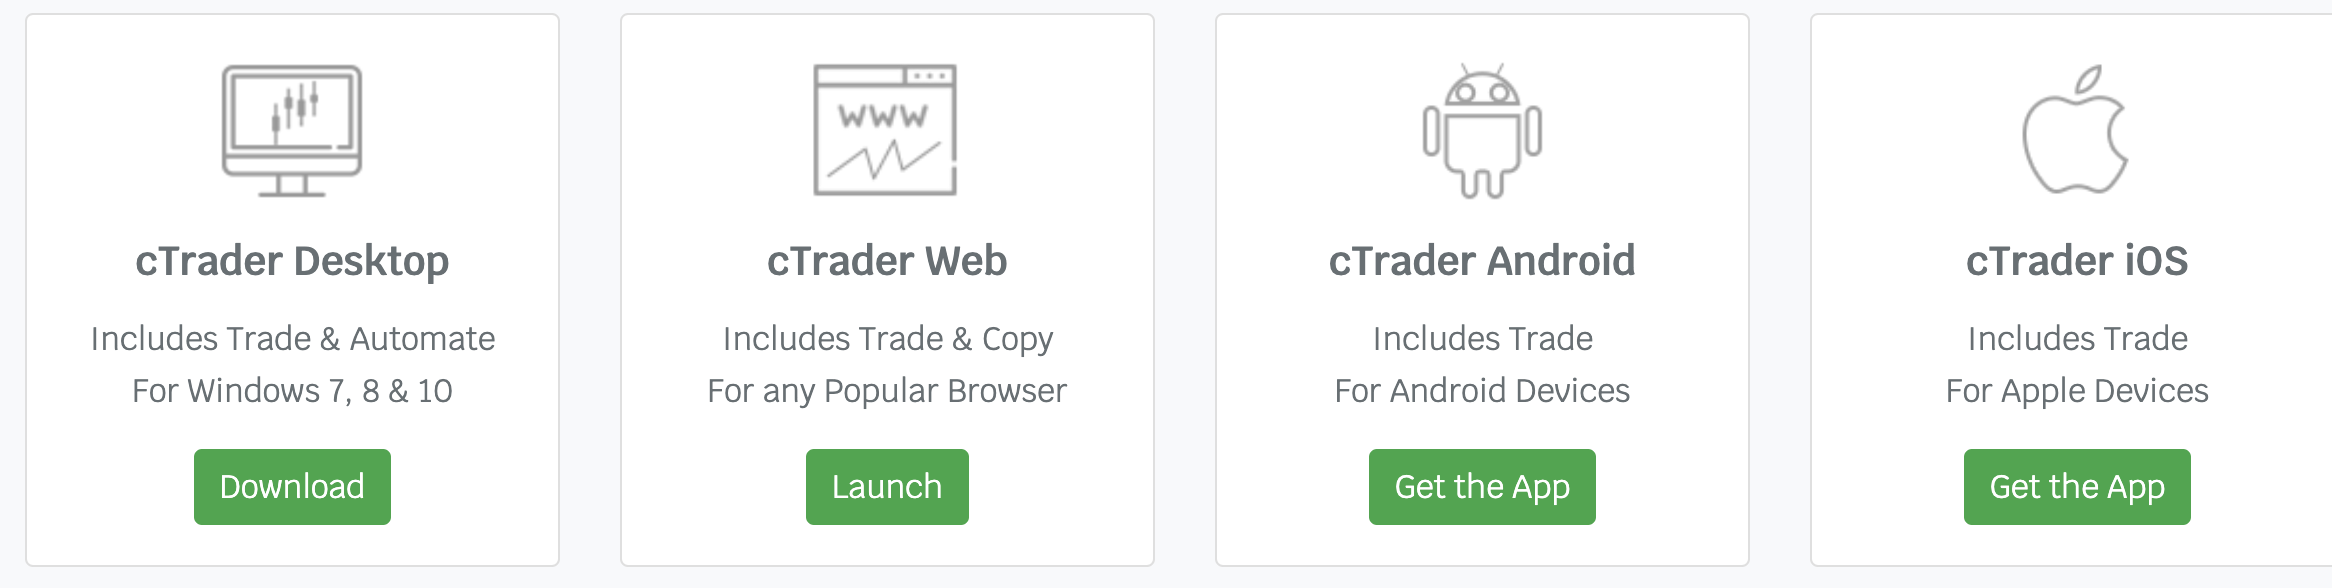 cTrader em diferentes dispositivos, como Desktop, Web, Android e iOS